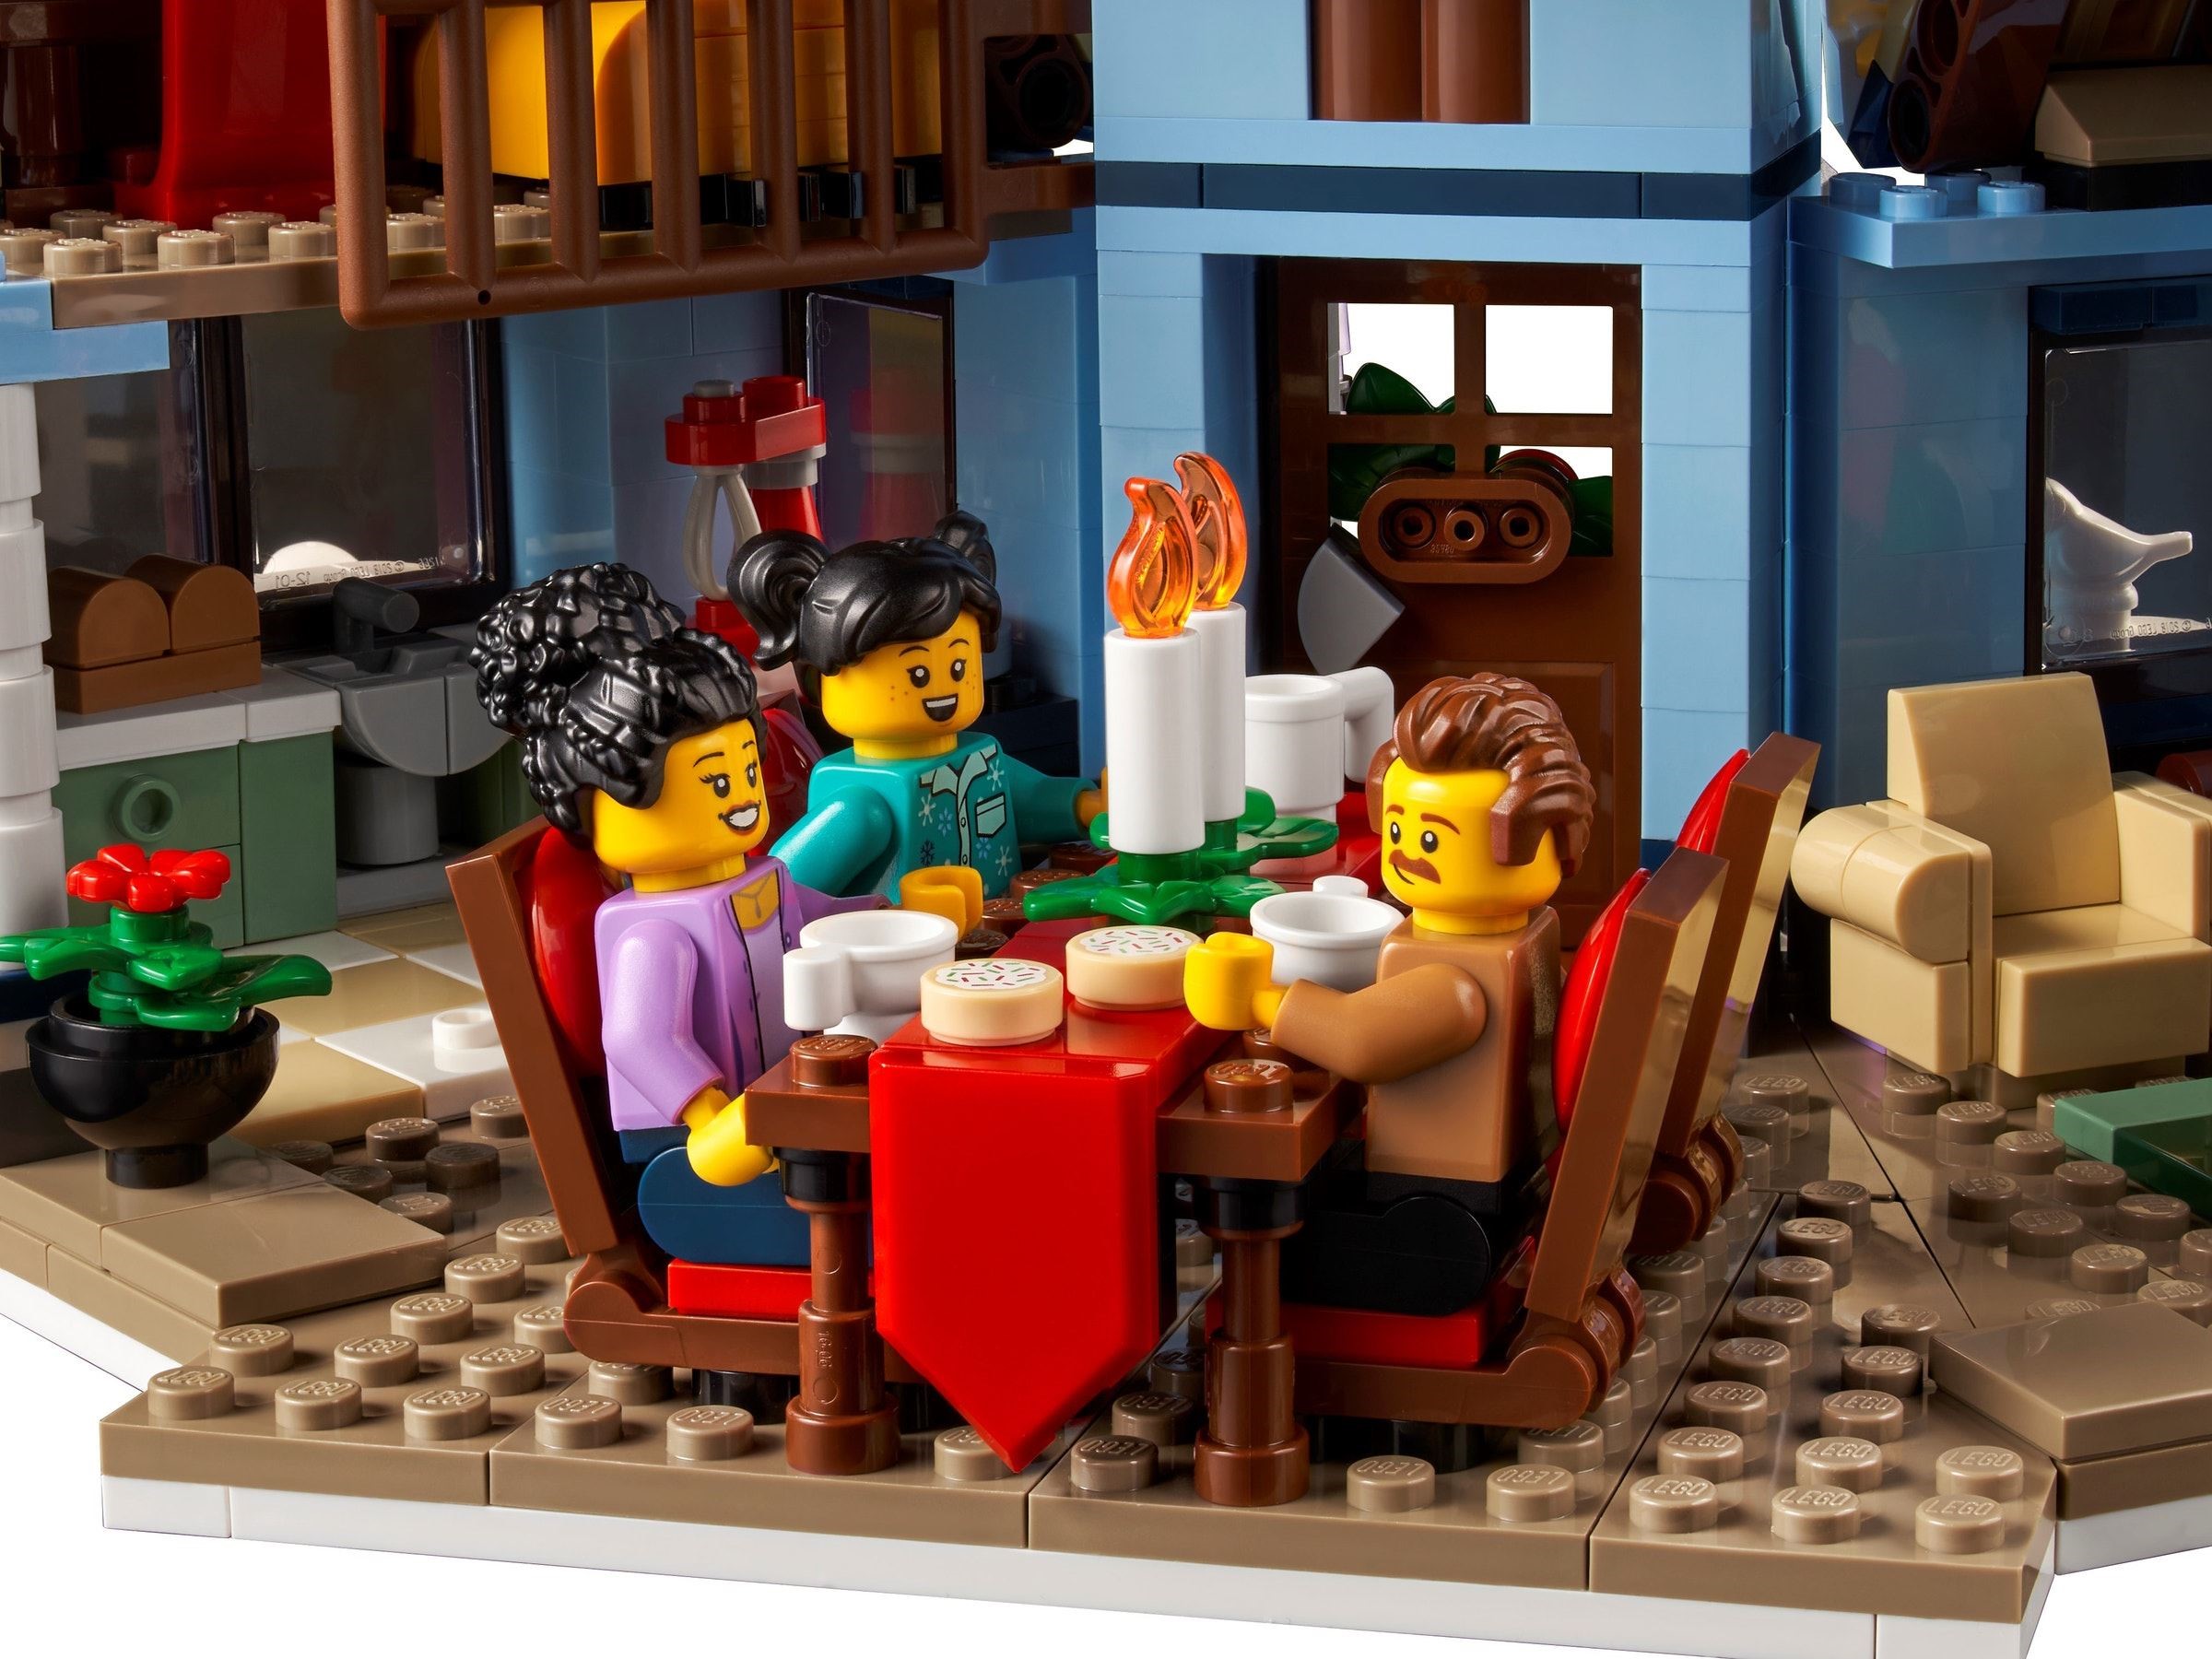 LEGO 10293 Winter Village Santa’s Visit (Визит Санты в Зимнюю деревню)